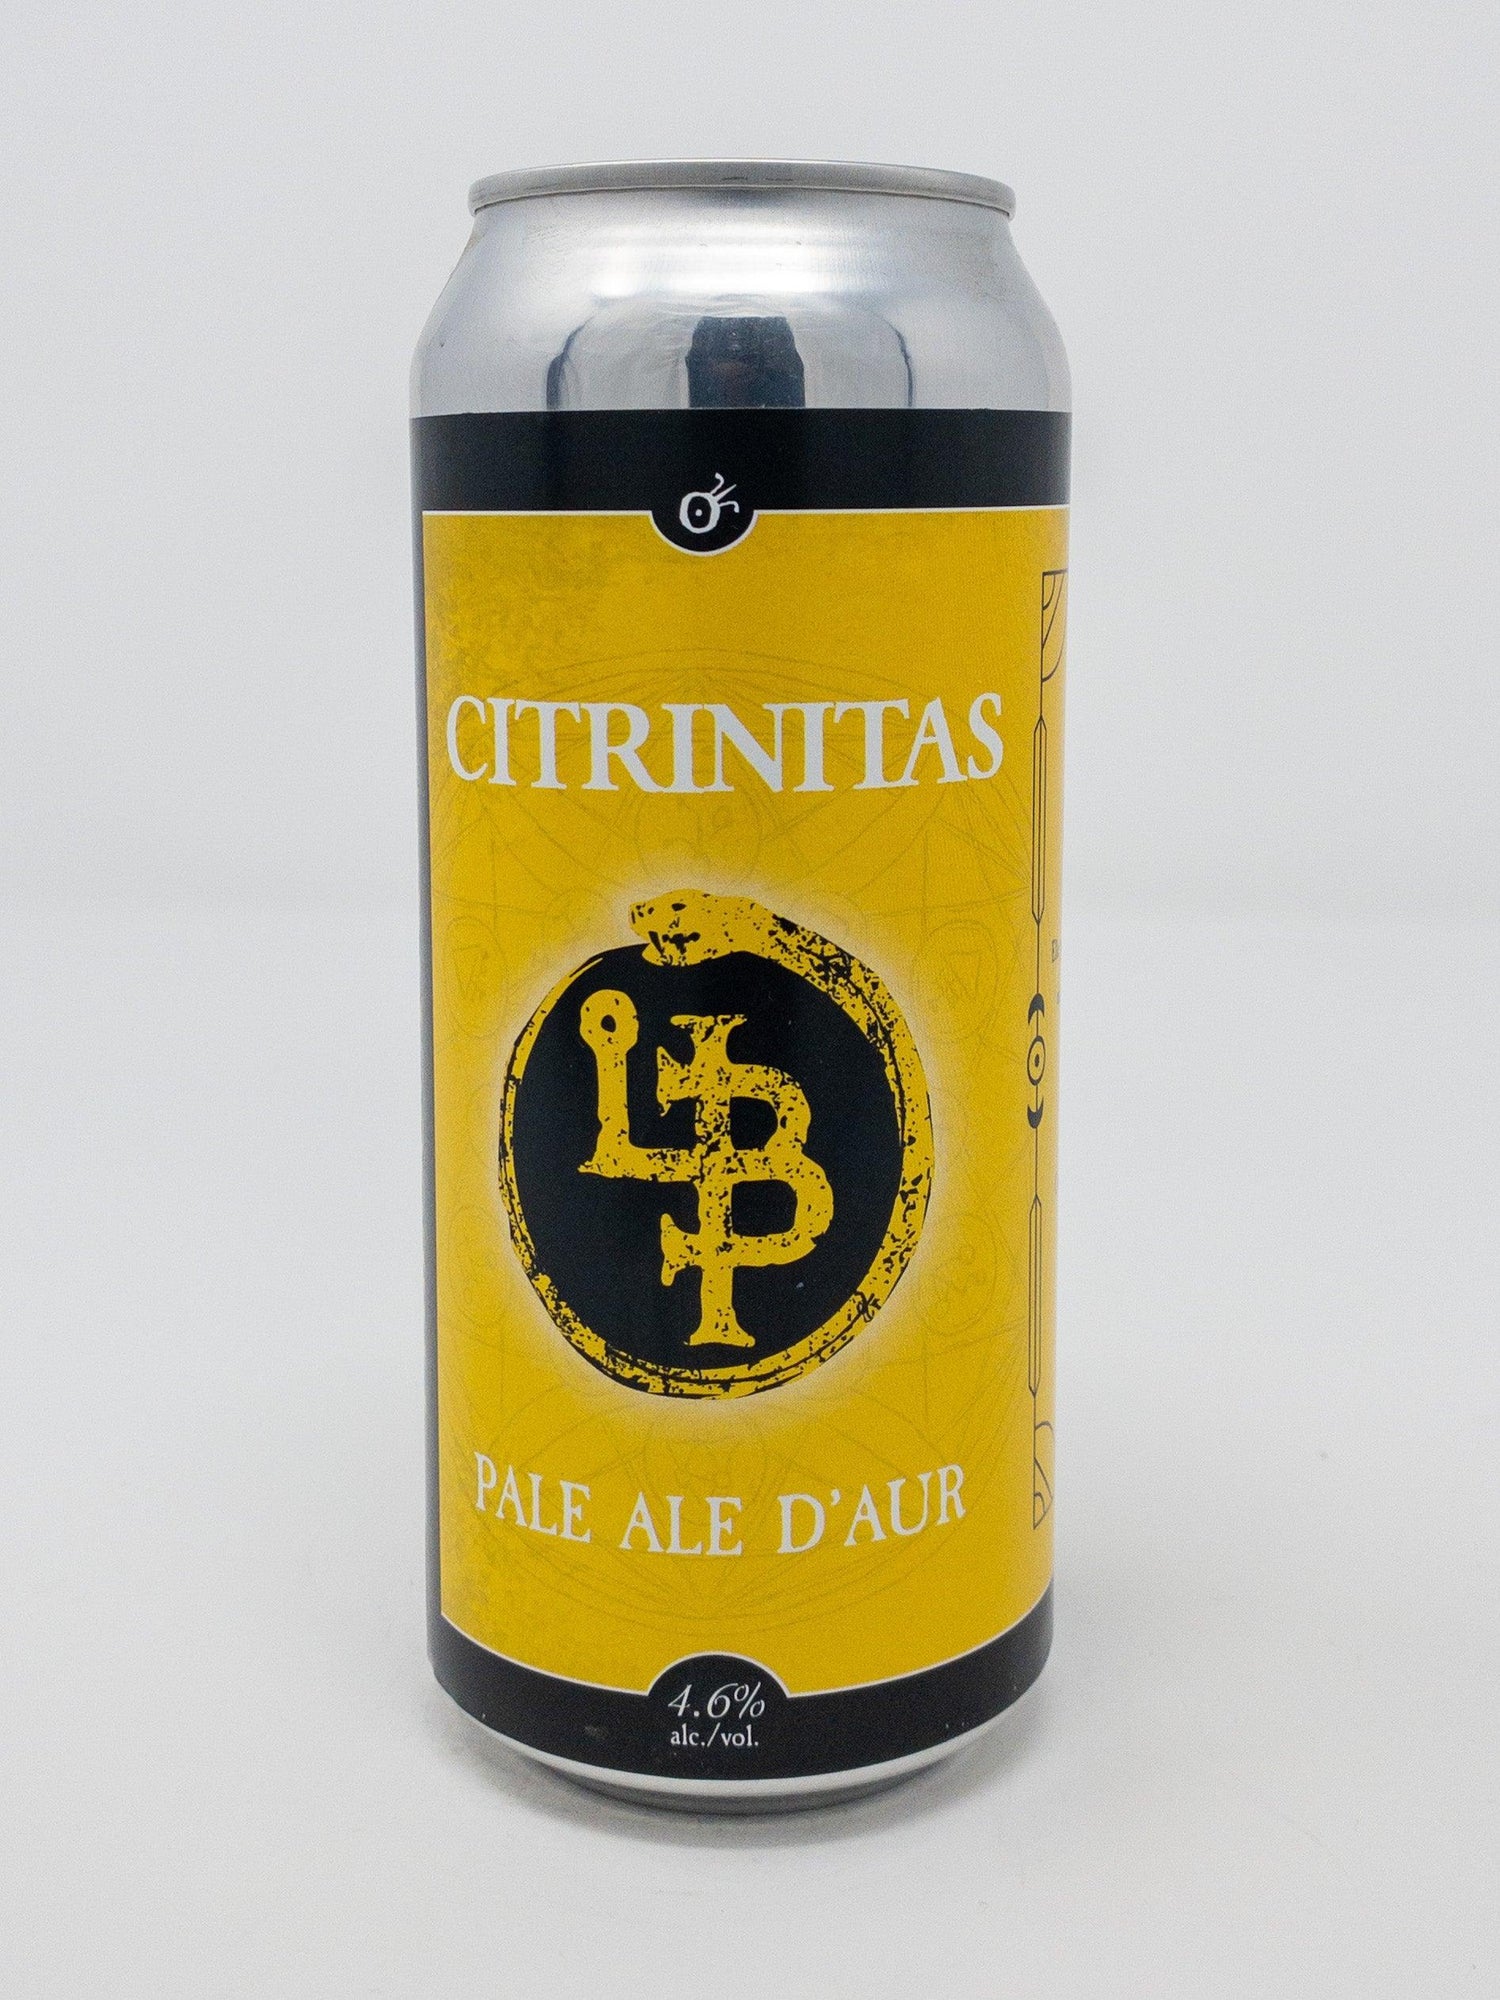 Citrinitas - Pale Ale d'Aur - Soif - Les Bières Philosophales Microbrasserie - Beau Dégât Bièrerie de Quartier